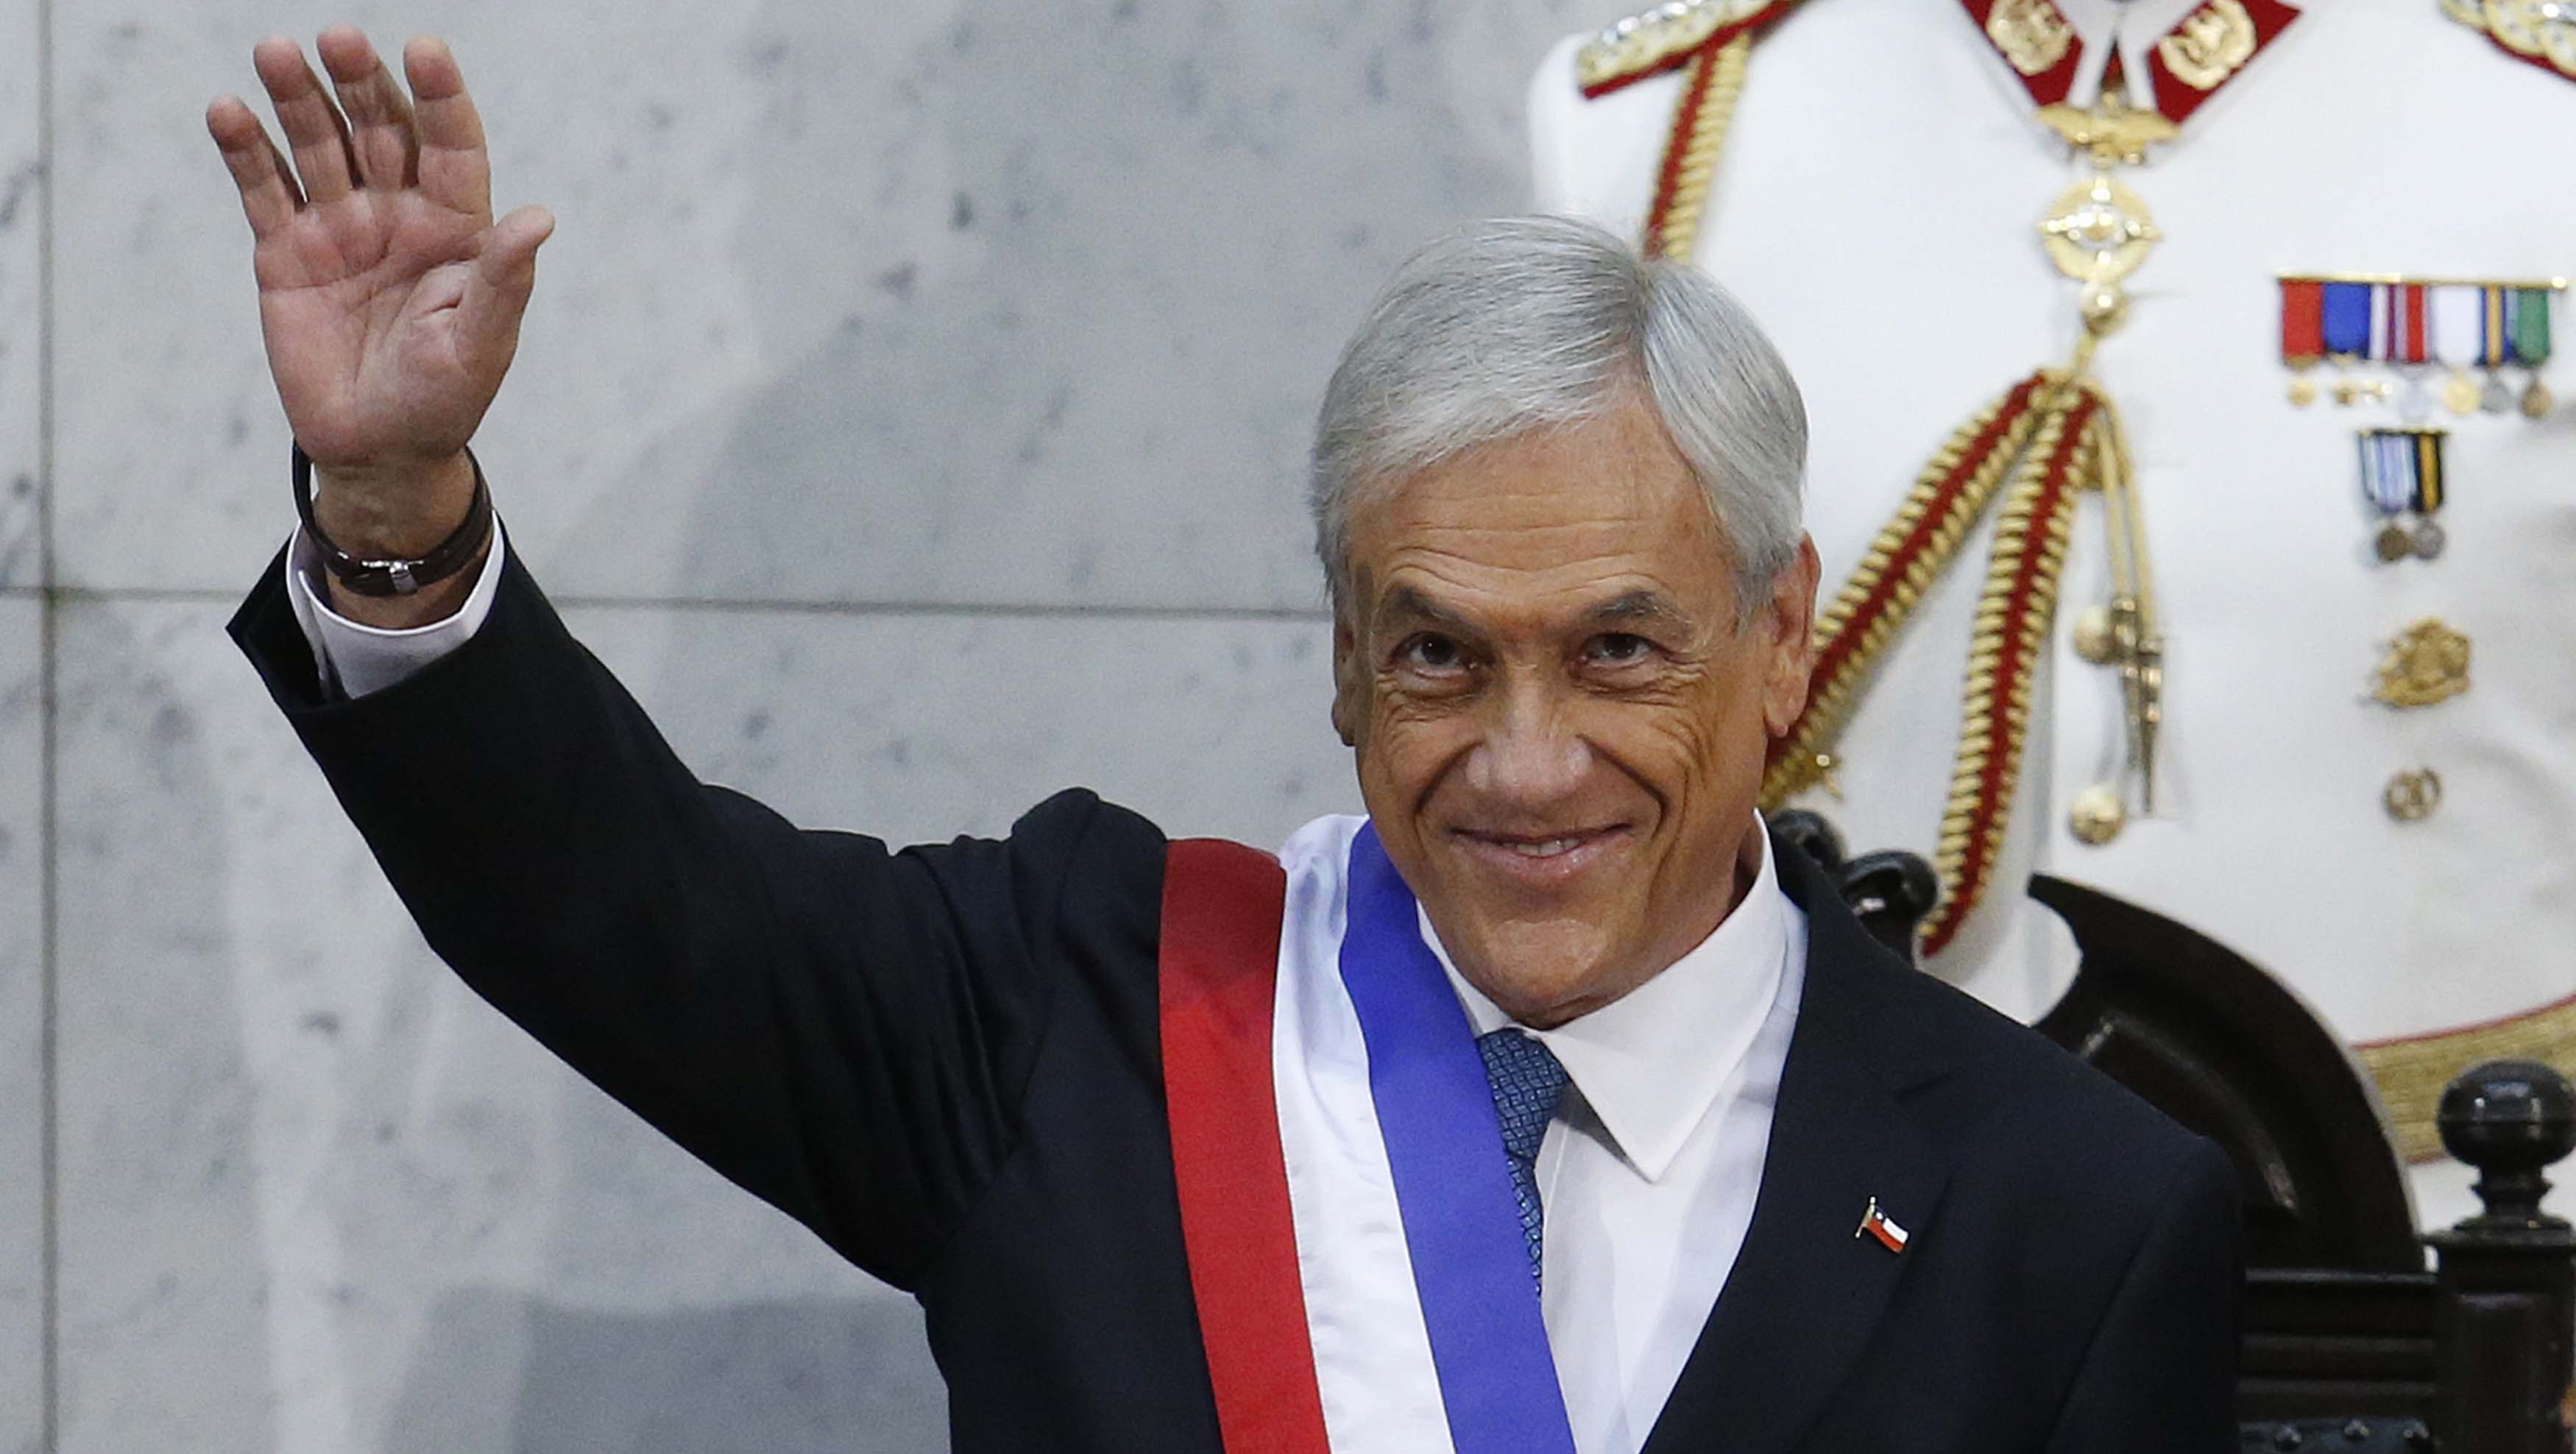 La aprobación del gabinete ministerial de Piñera también decayó con respecto a la semana anterior.